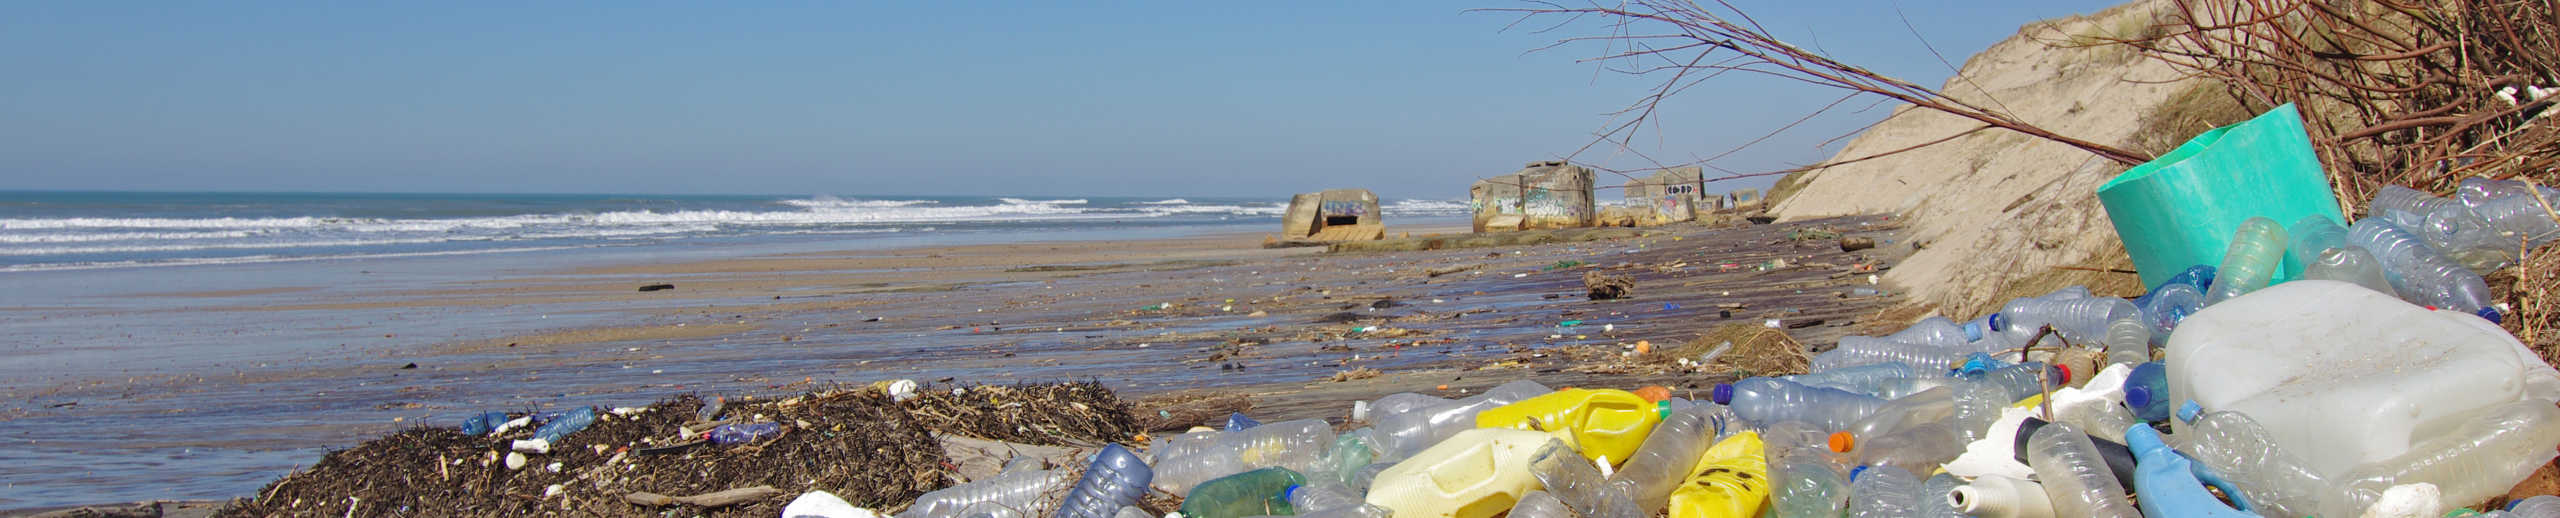 Ein Strand mit unmengen an Plastikmüll